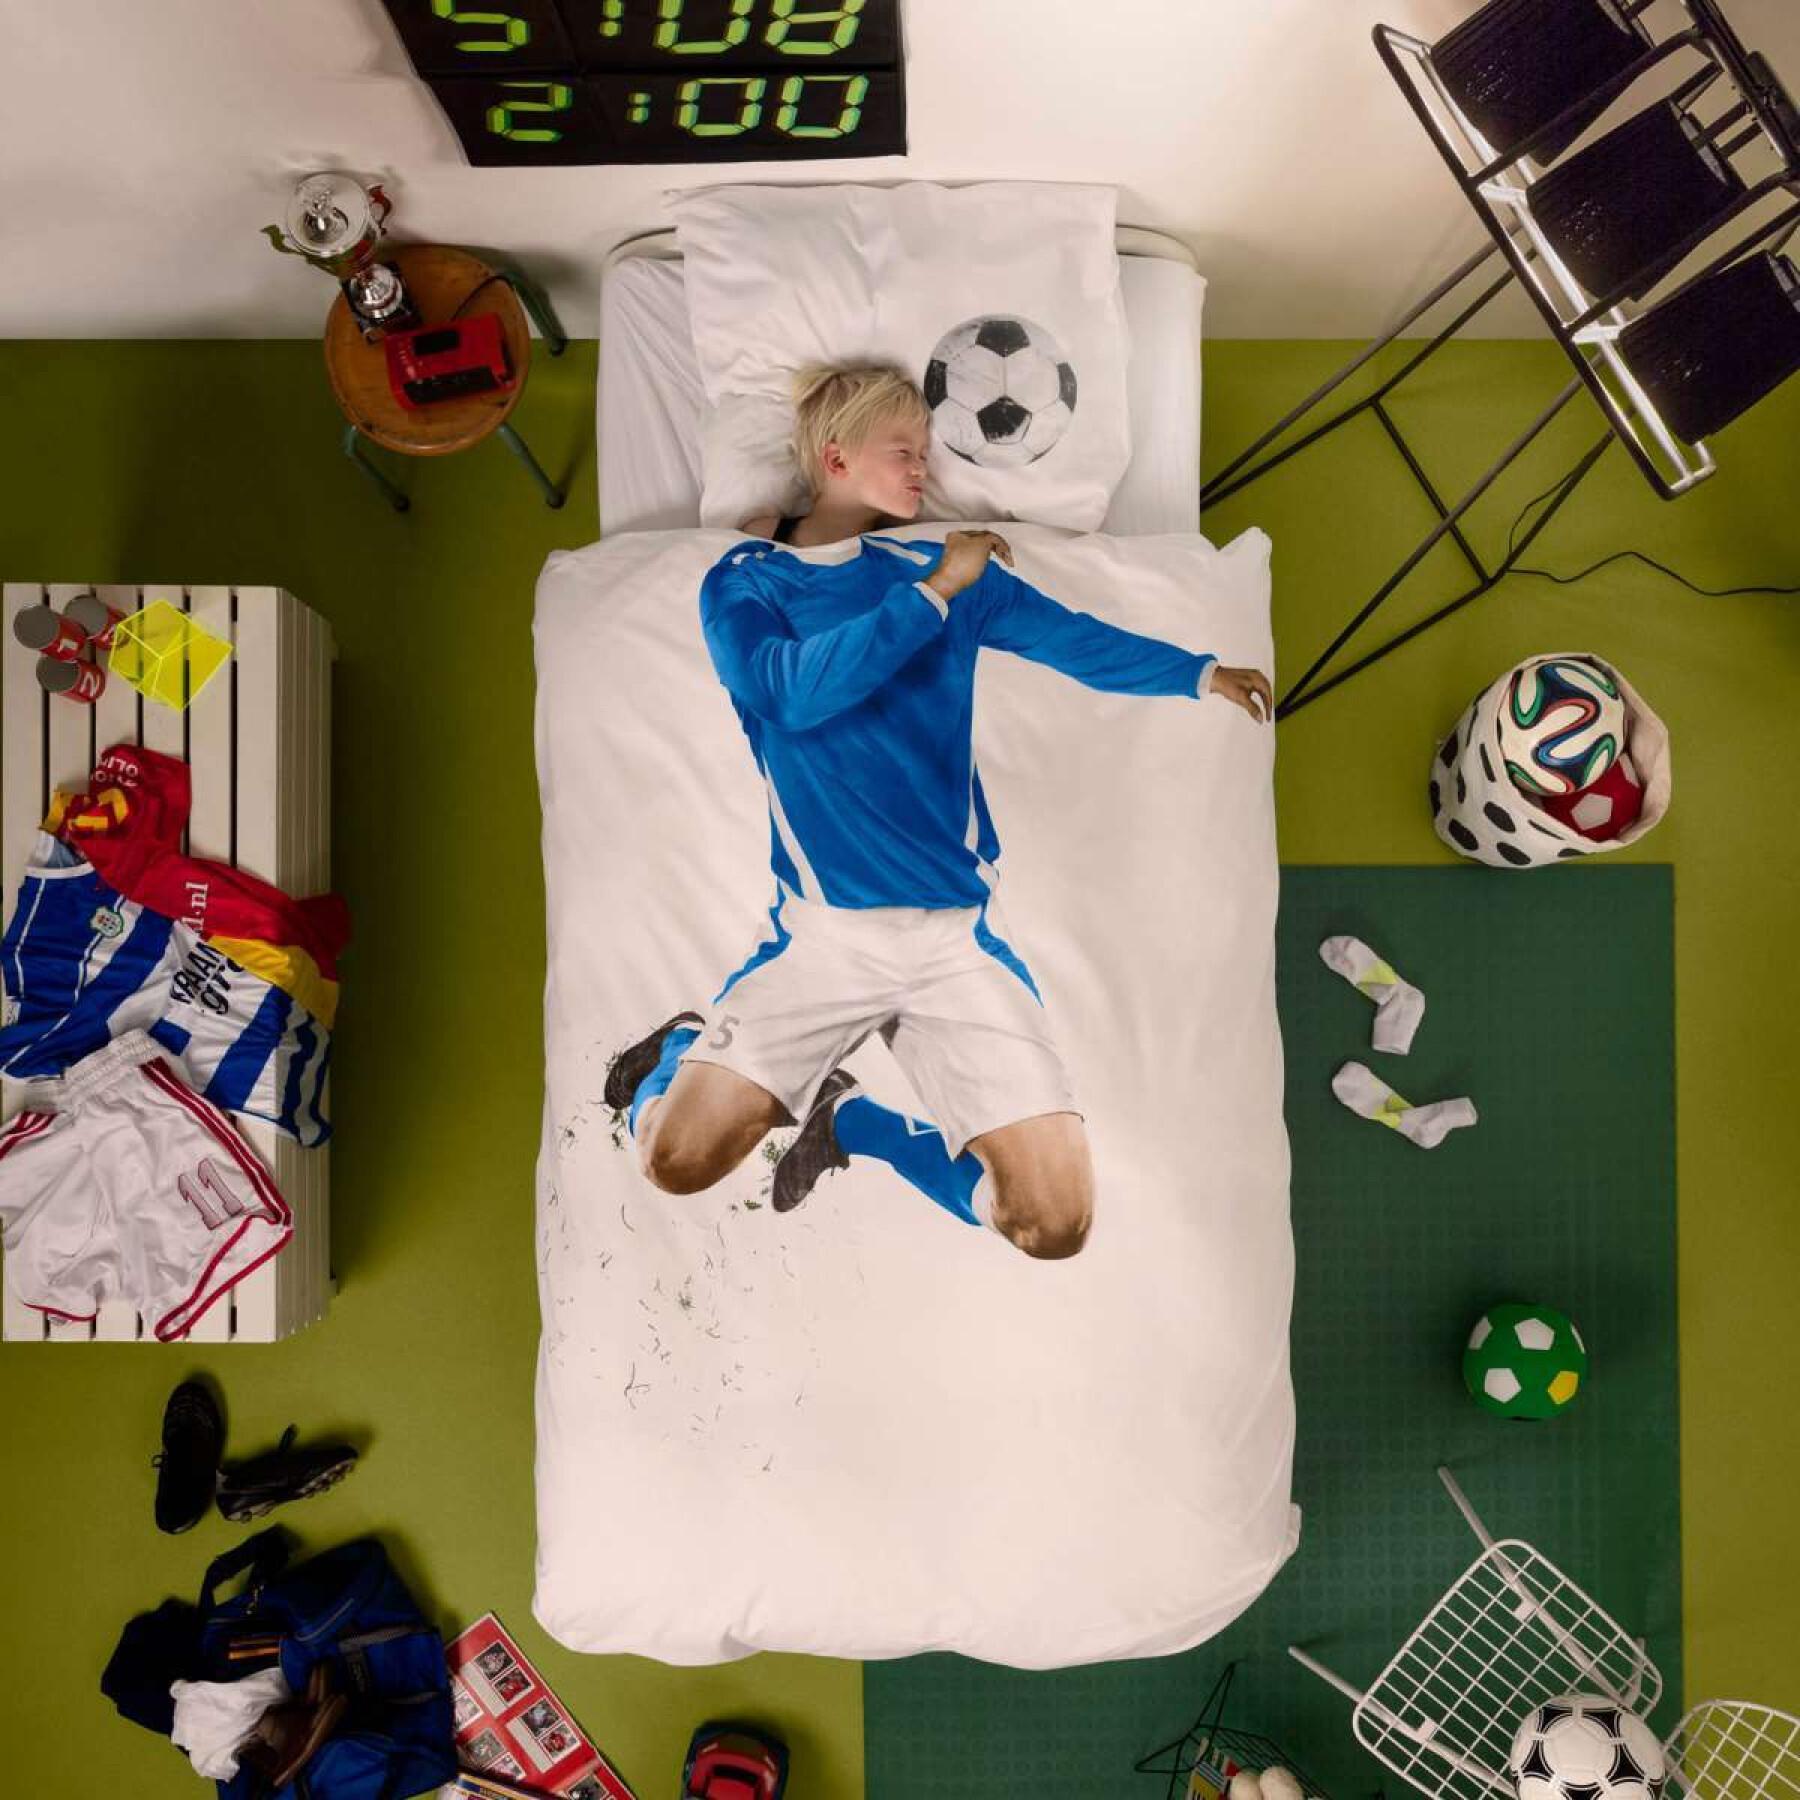 Bettdecken- und Kopfkissenbezug Kind Snurk Soccer Champ